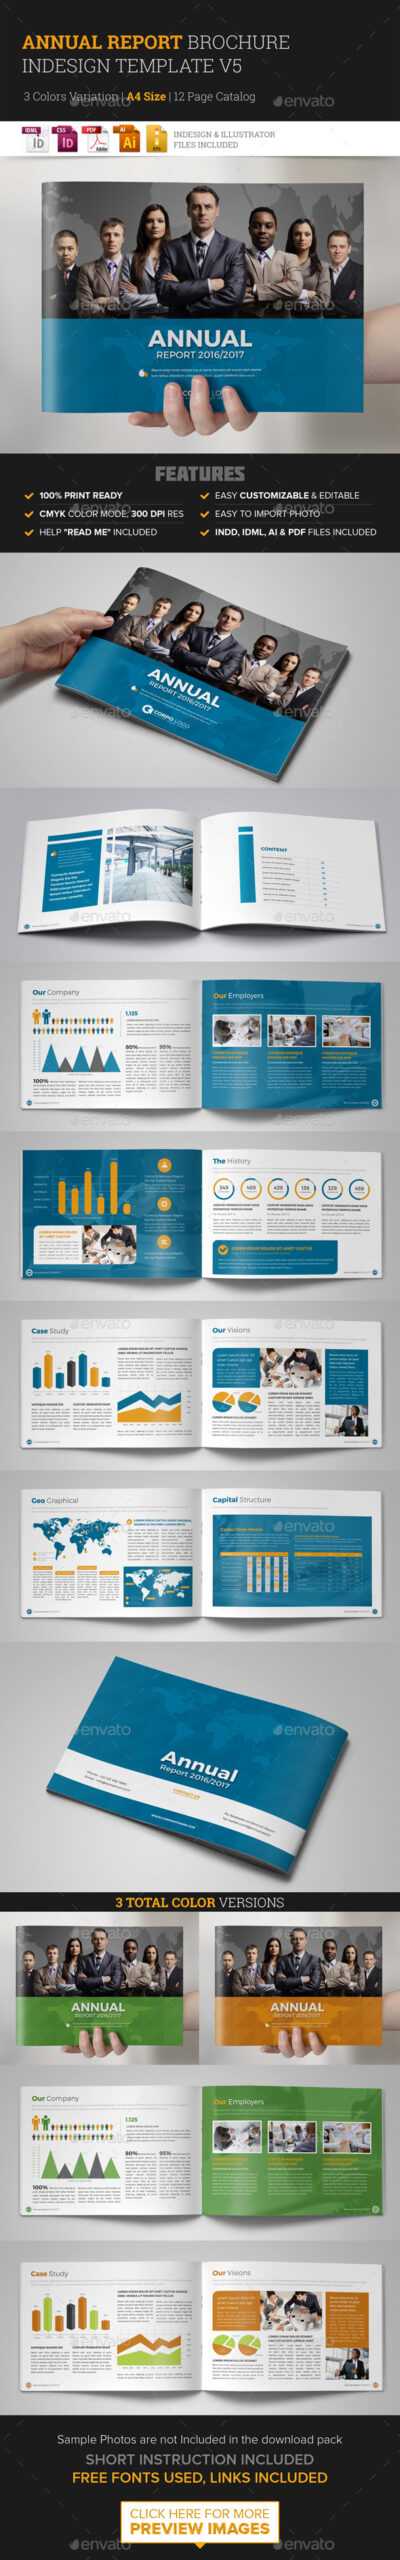 Annual Report Template Indesign Graphics, Designs & Templates Regarding Illustrator Report Templates